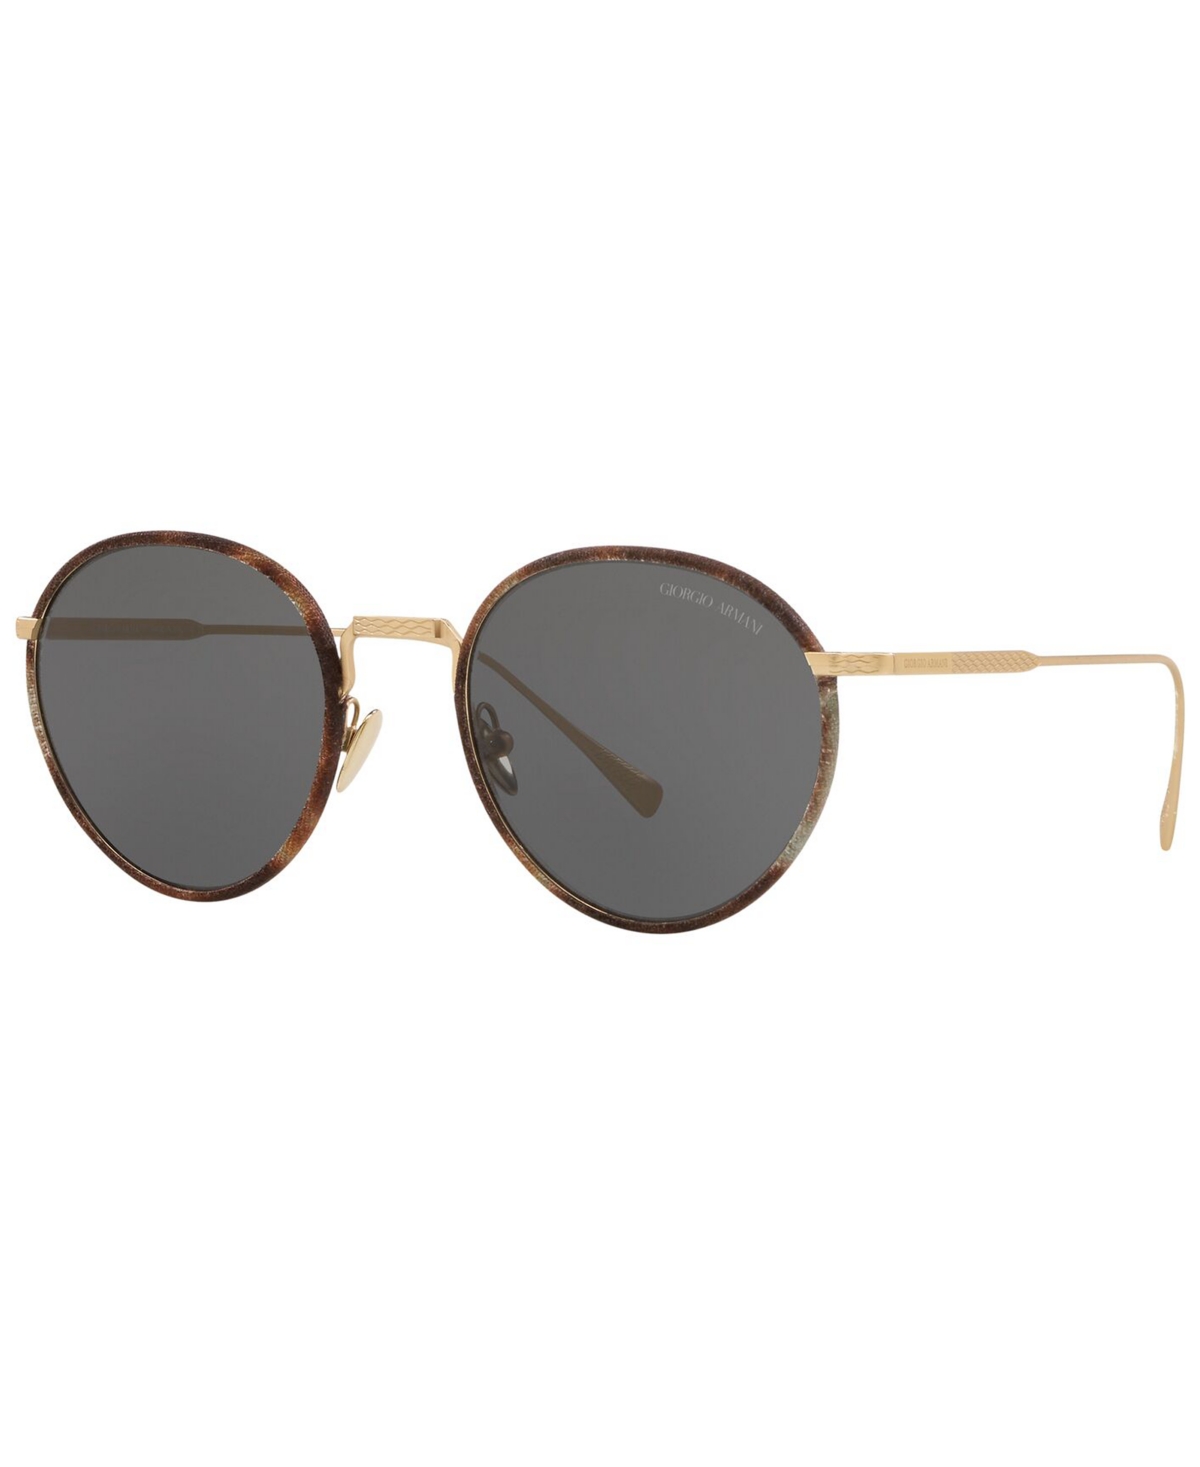 Giorgio Armani Men's Sunglasses In Gold